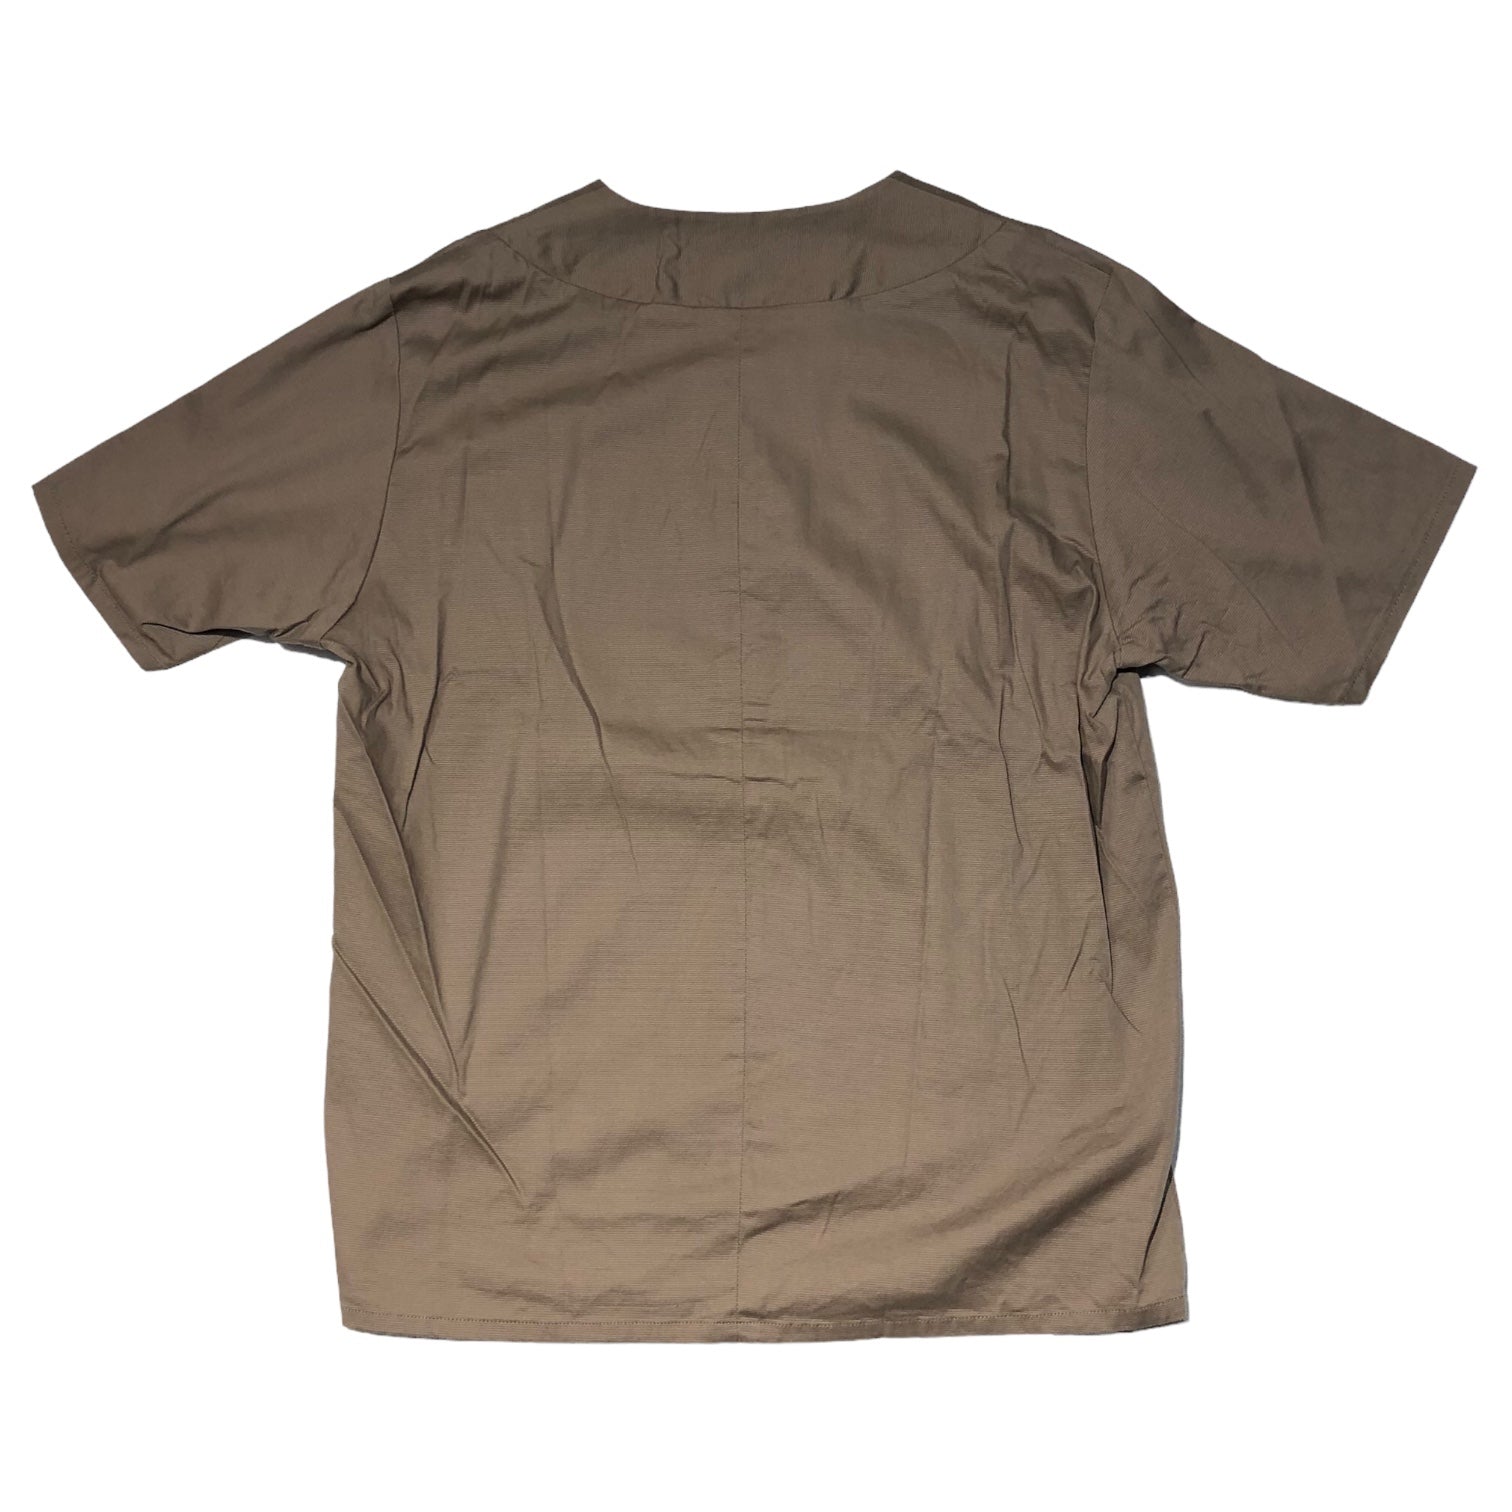 ETHOSENS(エトセンス) S/S pullover shirt 半袖 プルオーバー シャツ 2(M程度) ベージュ